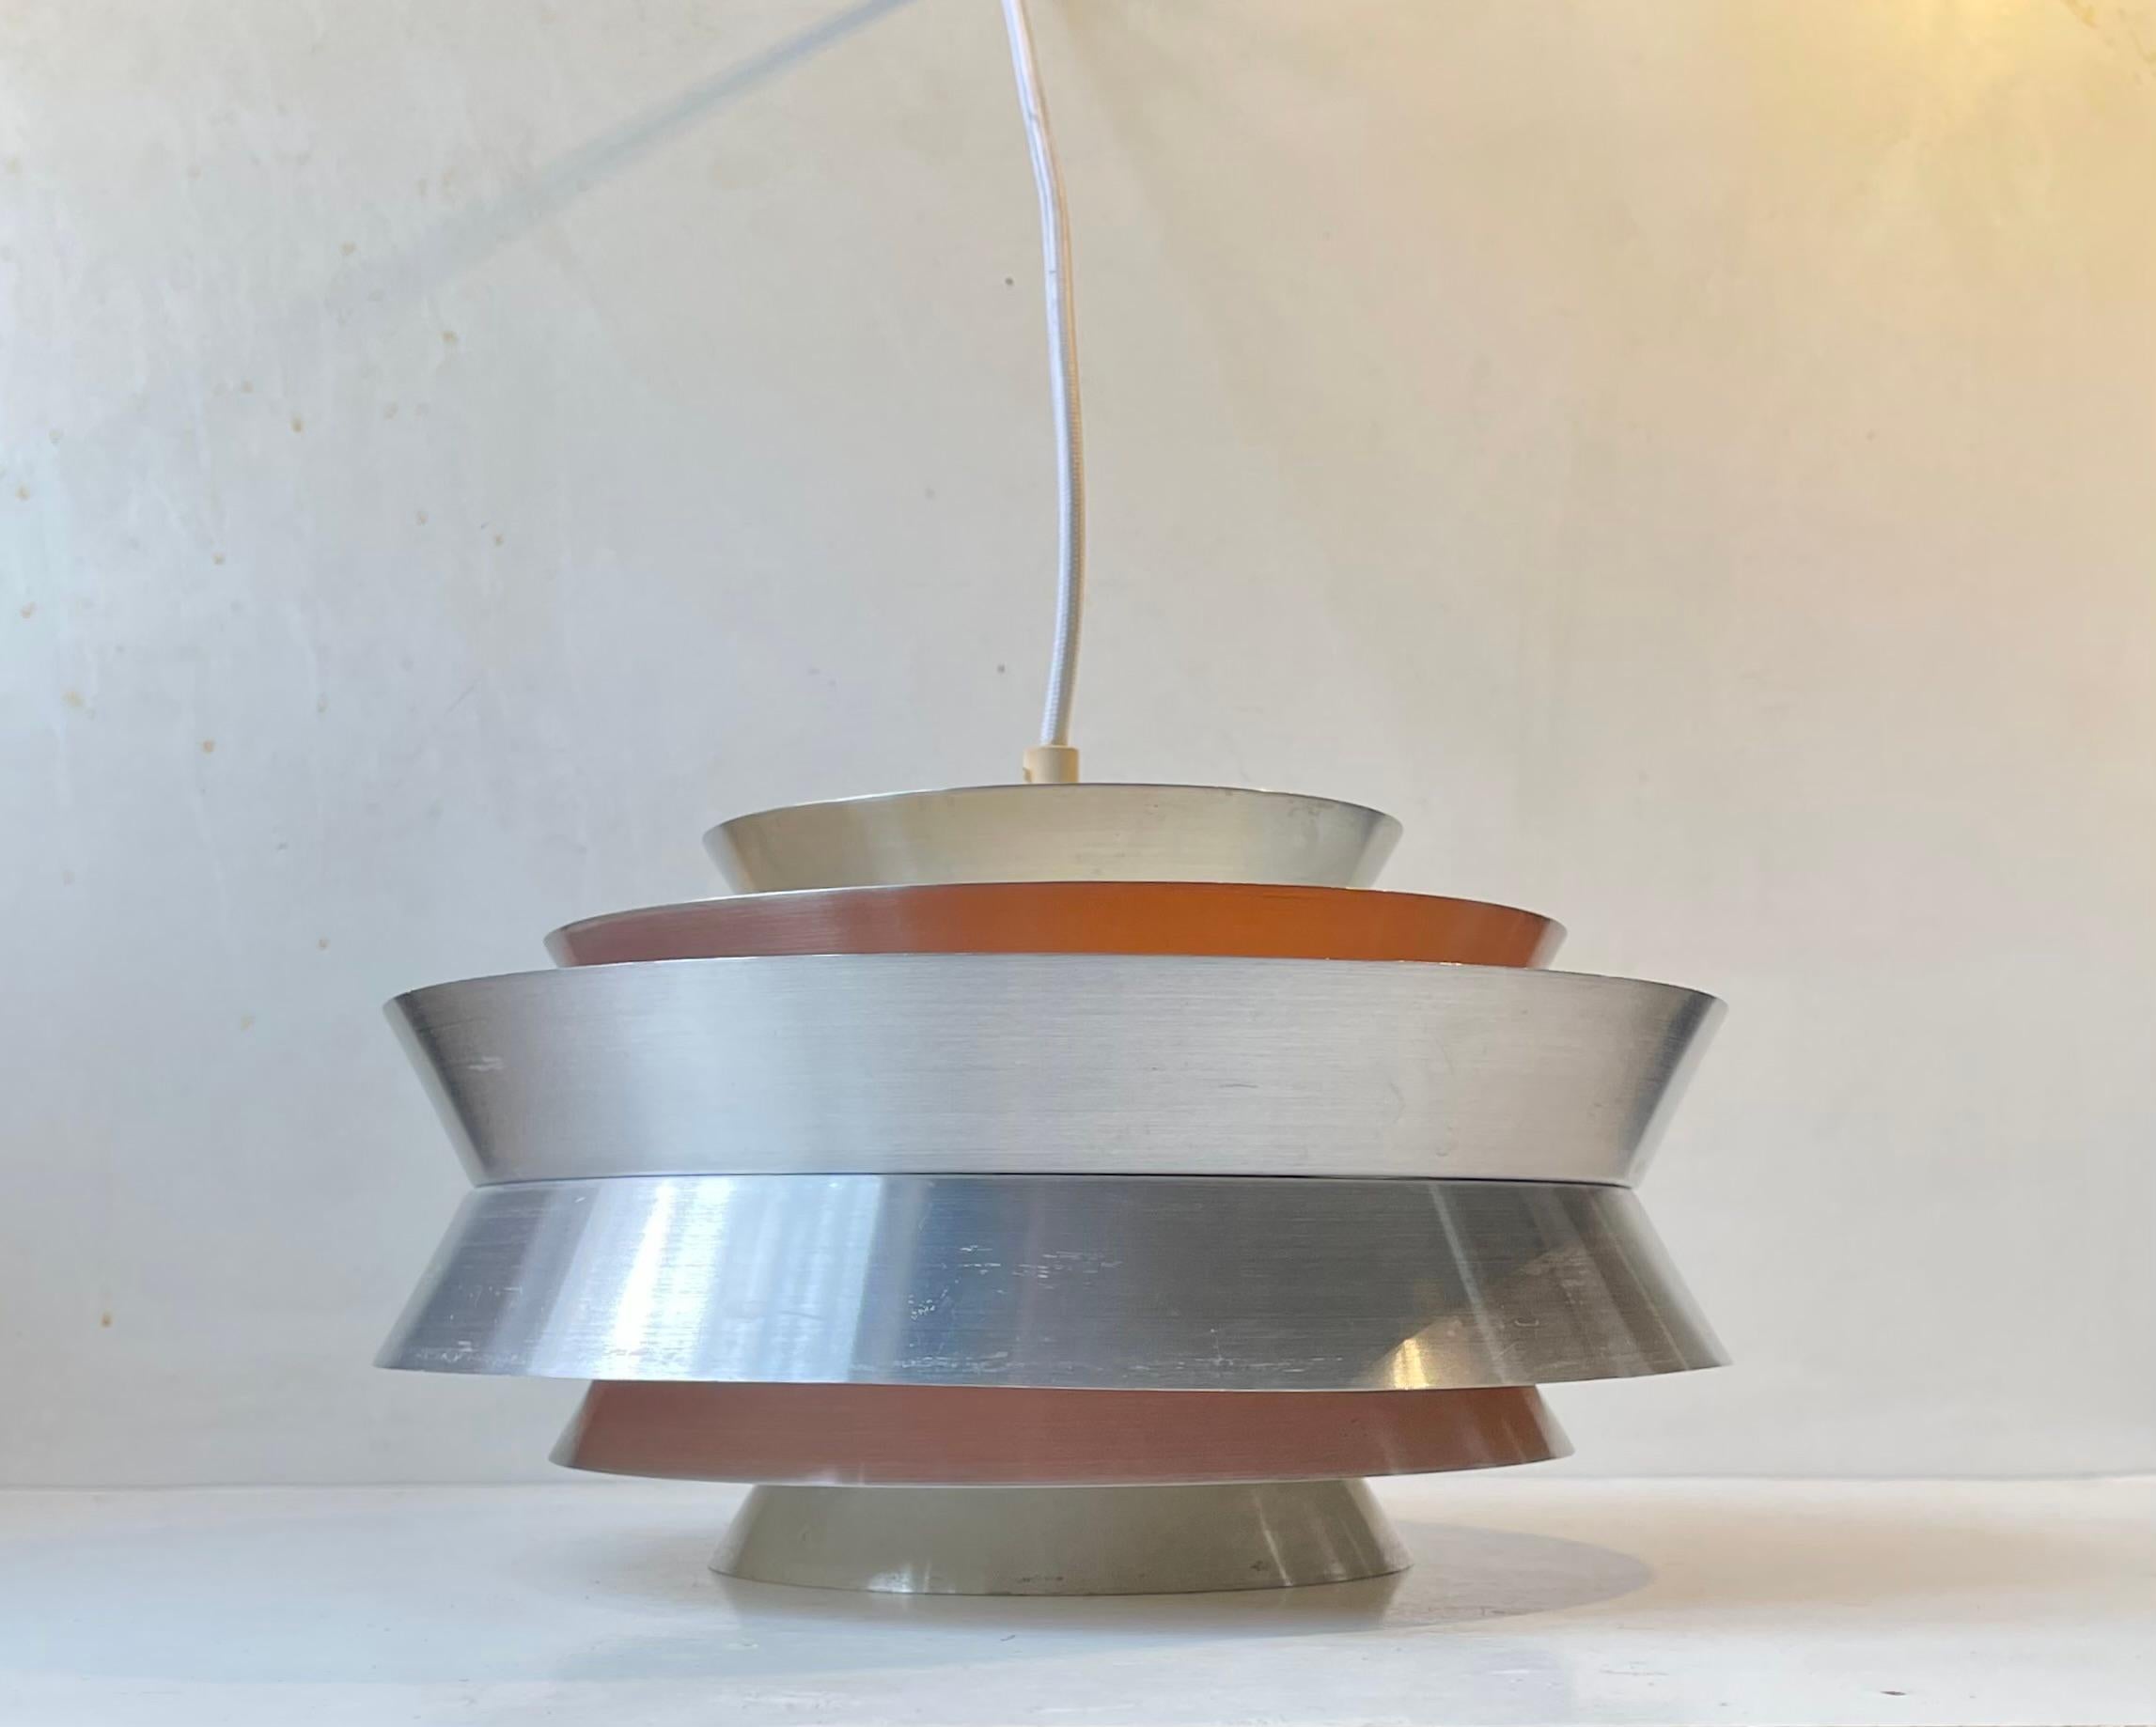 Pendelleuchte aus gebürstetem Aluminium namens Trava. Entworfen von Carl Thore alias Sigurd Lindquist. Hergestellt in Granhaga Metal Industri in Schweden in den späten 1960er Jahren. Sie weist eine mehrstufige Konstruktion mit verschiedenen schrägen